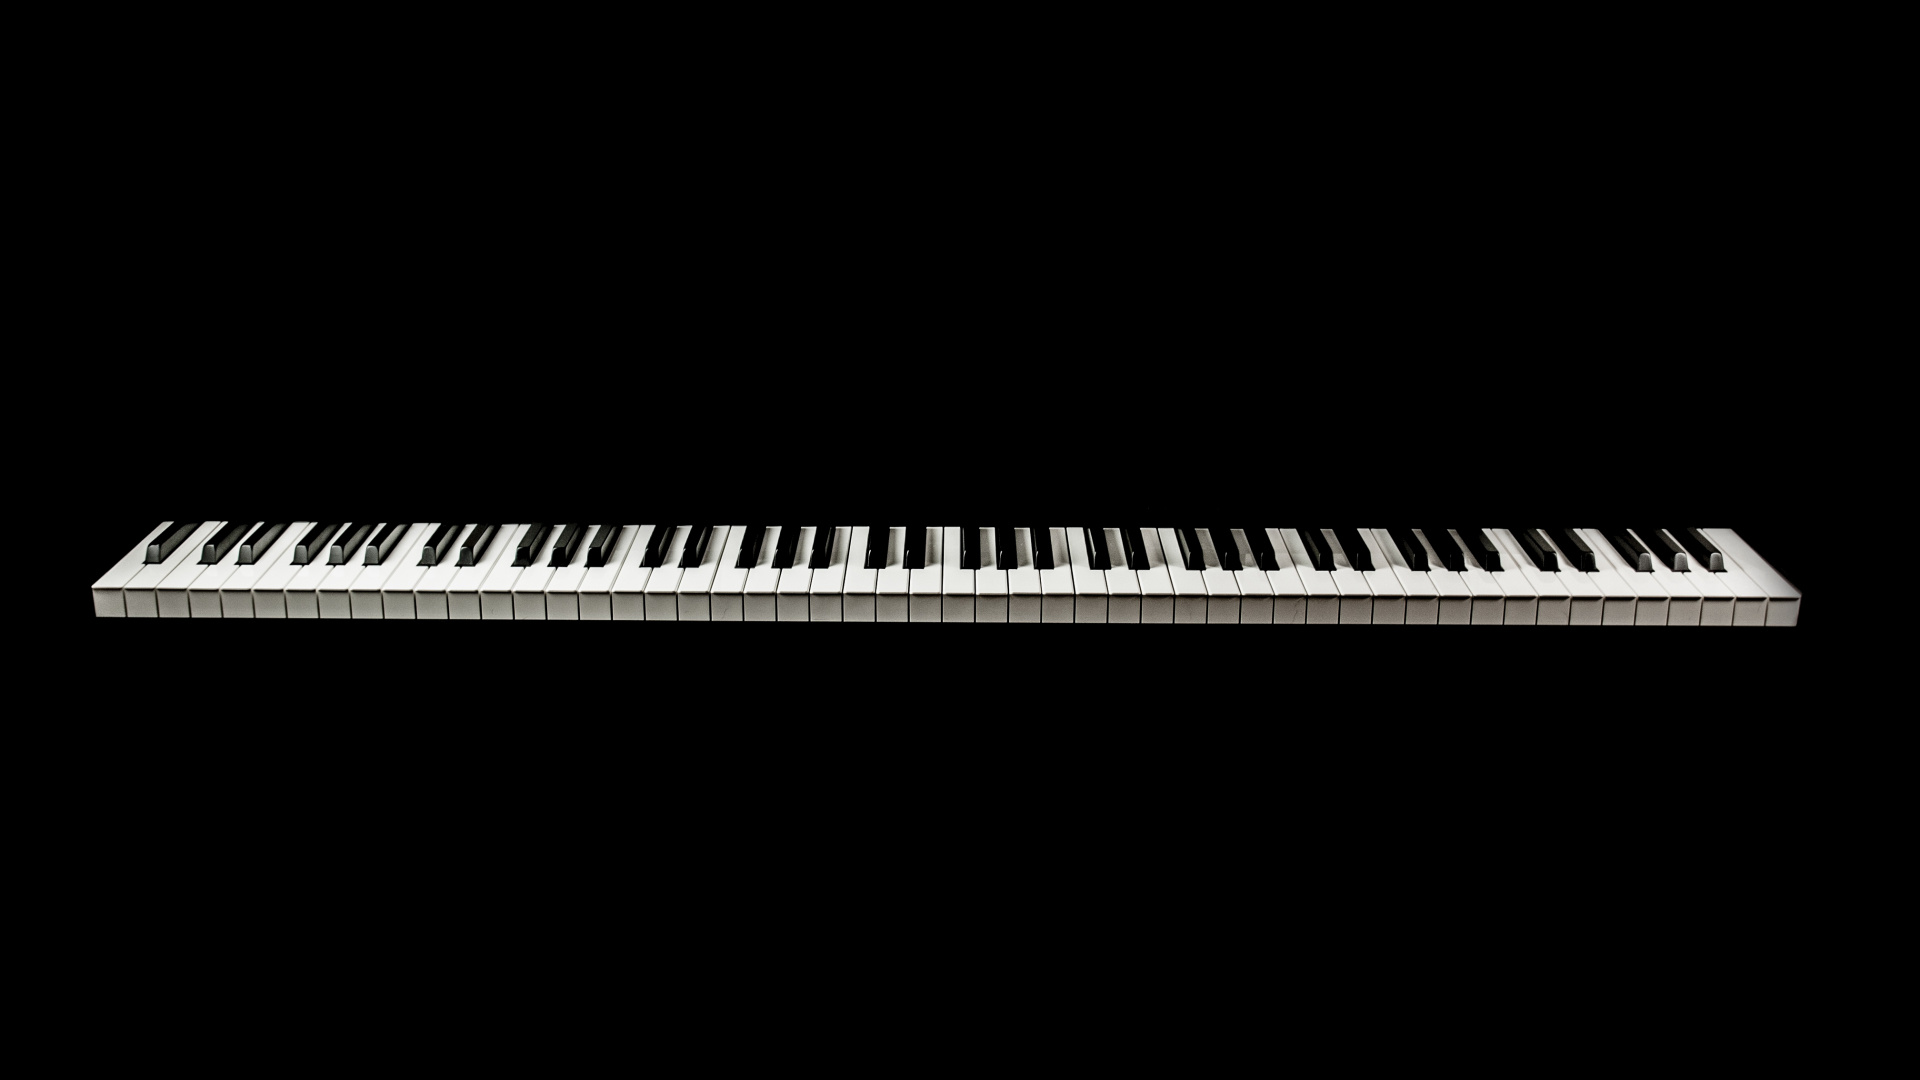 音乐键盘, 数字钢琴, 电子琴, 钢琴, 键盘 壁纸 1920x1080 允许